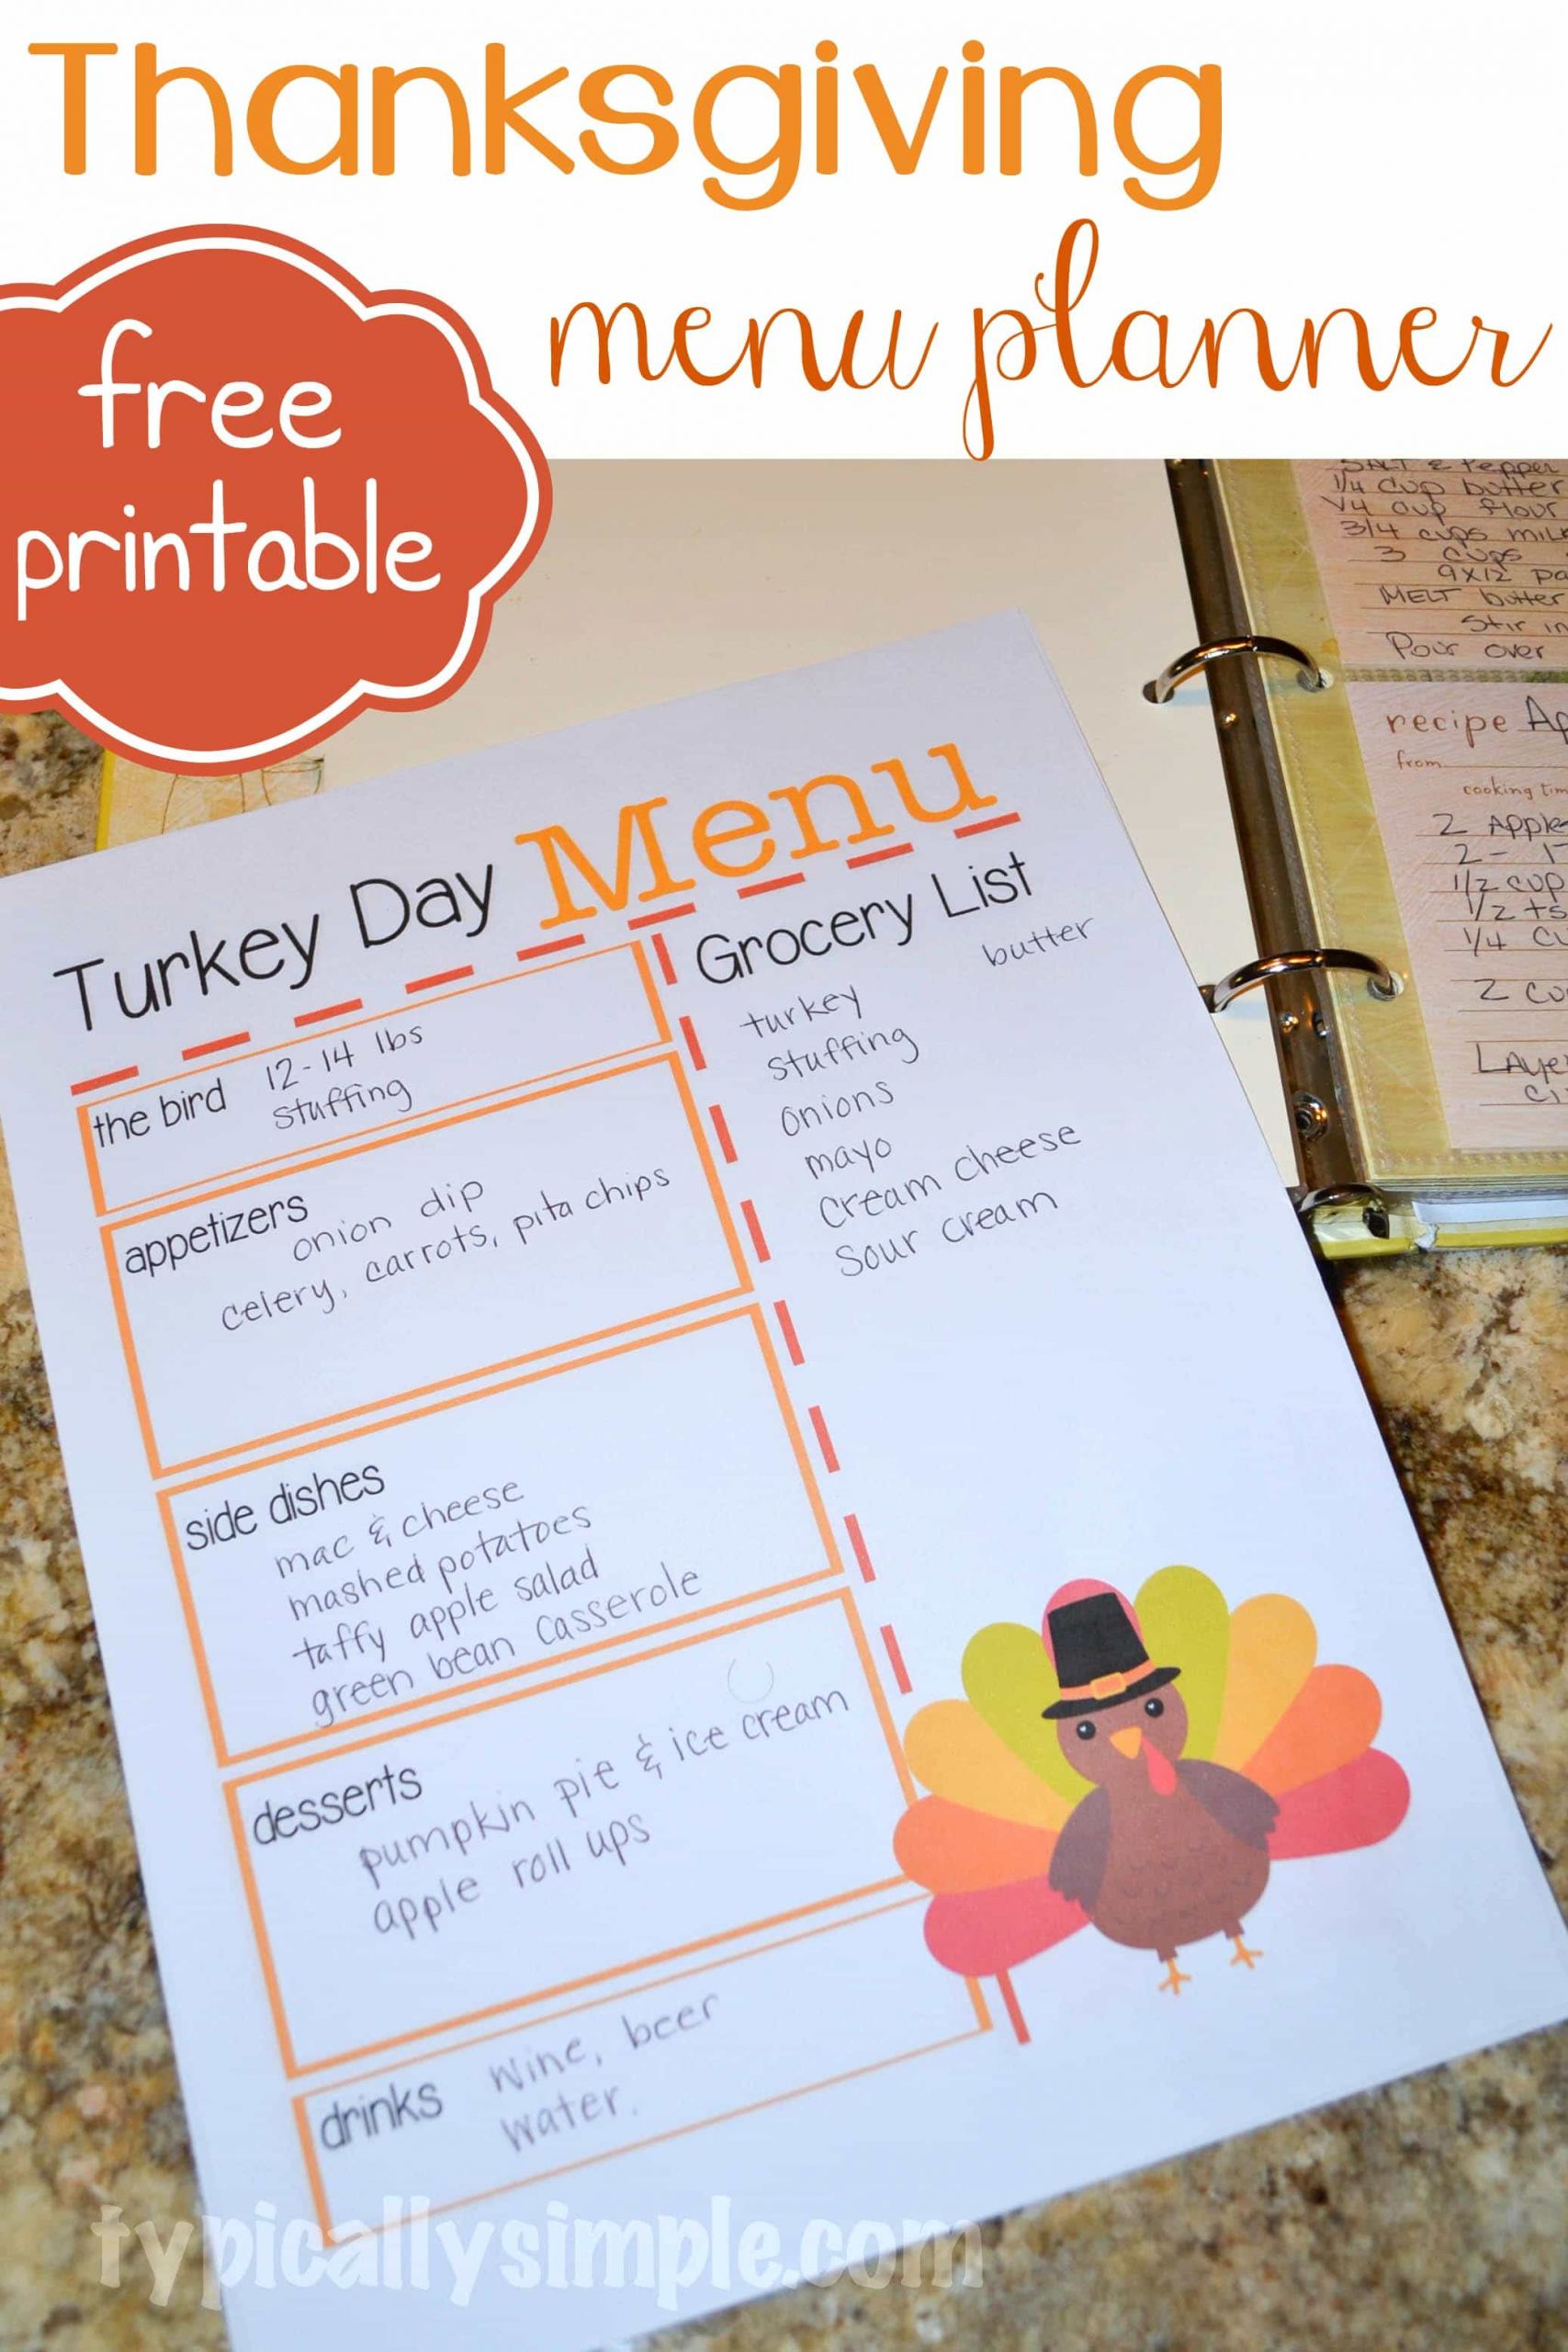 Planning Thanksgiving Dinner Checklist
 Turkey Day Menu Planner Typically Simple